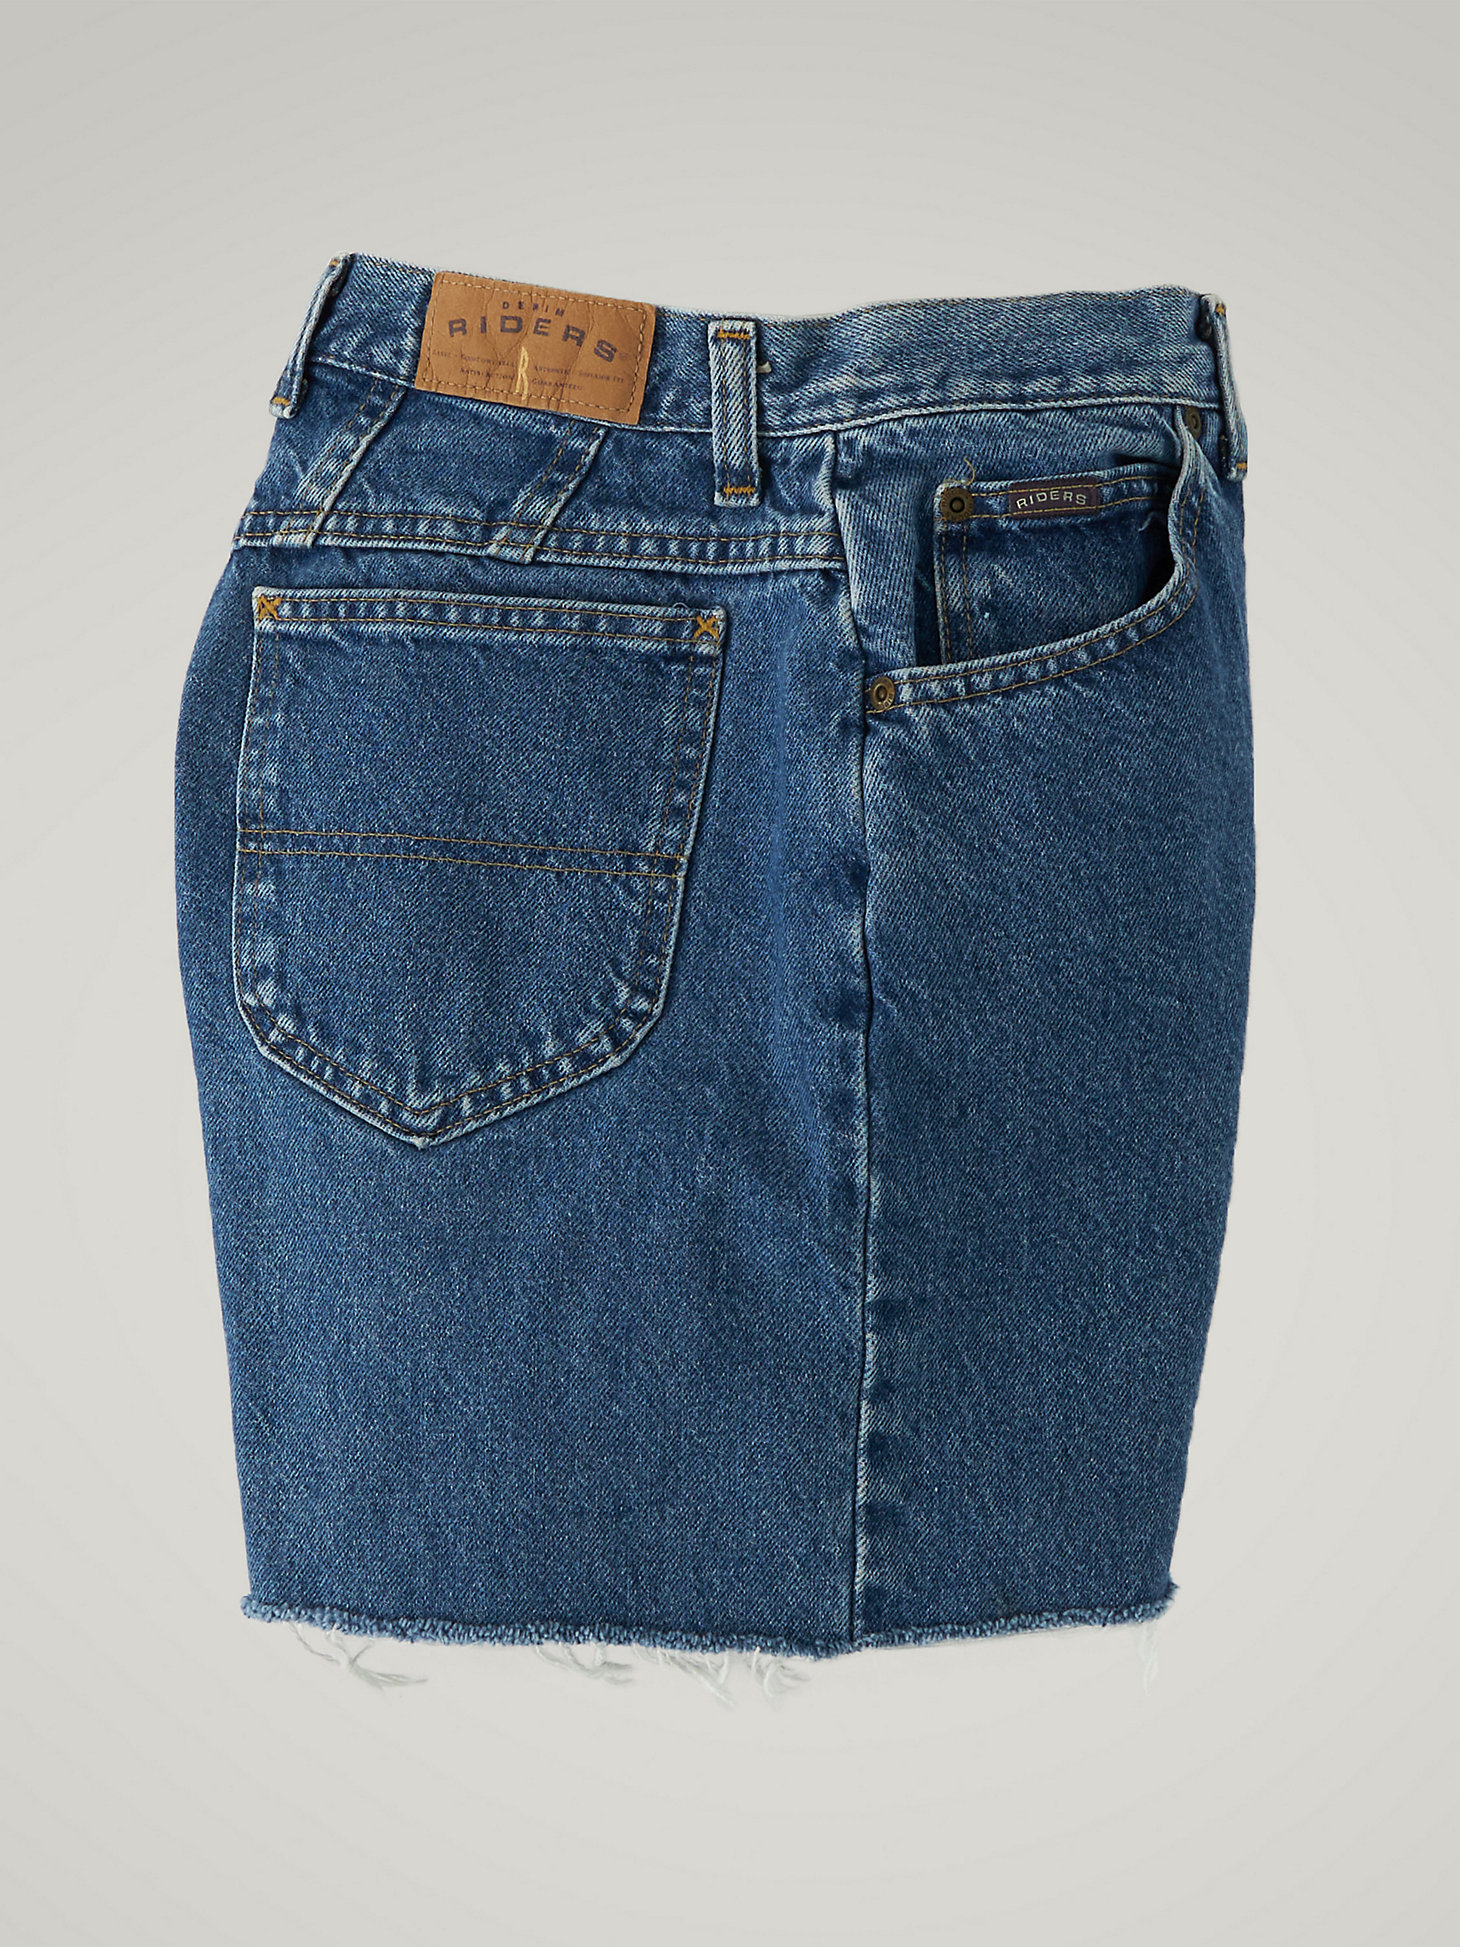 Women's Vintage Cut-Off Shorts WS36 (Size 31) in Dark Denim alternative view 2